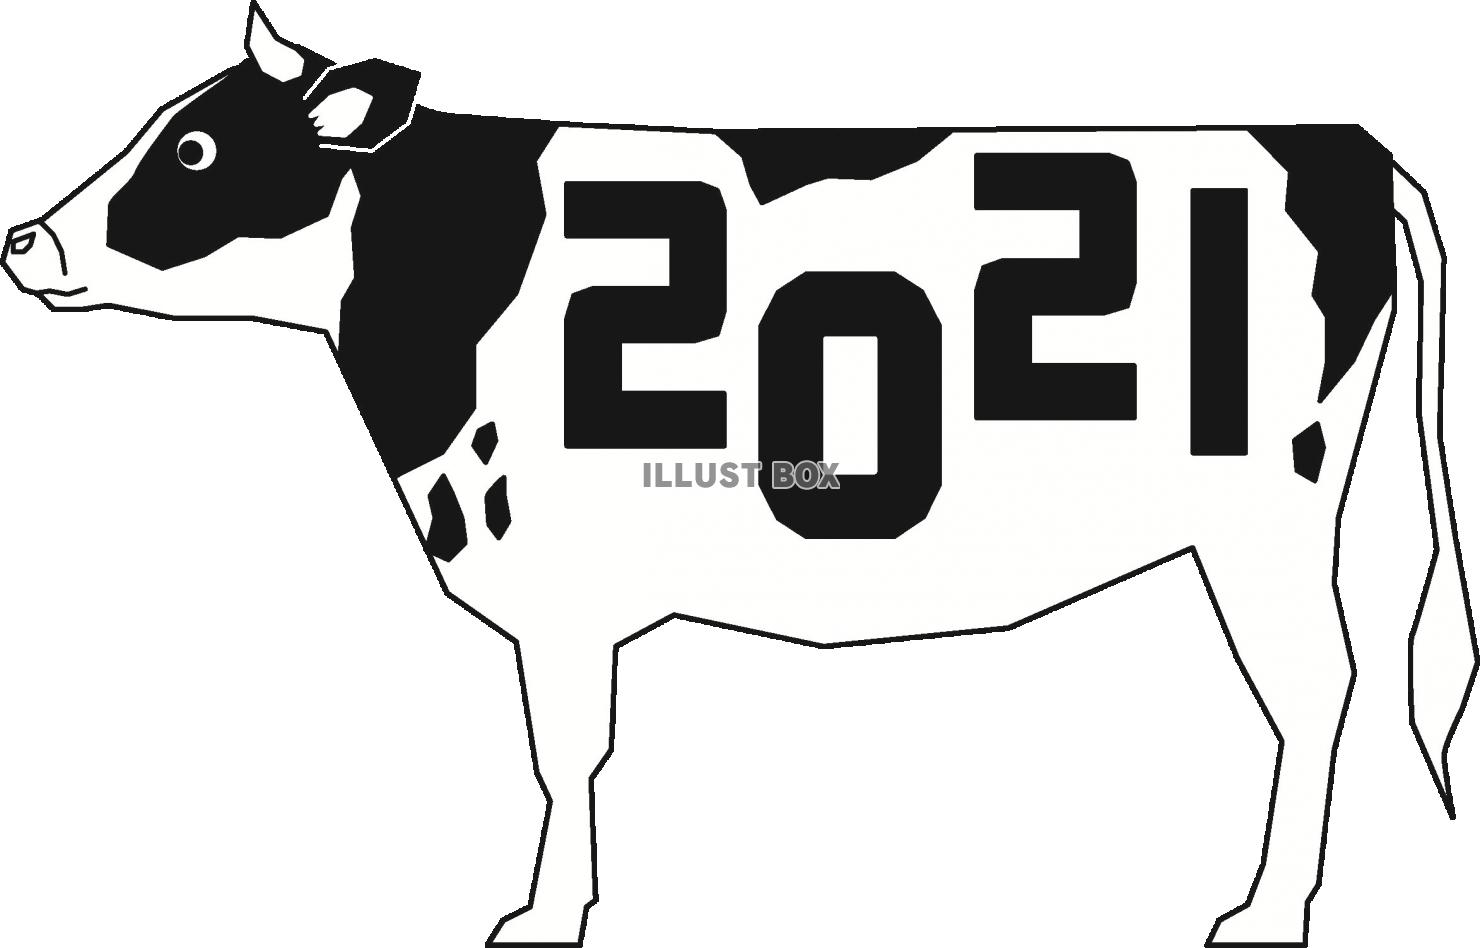 2021年の牛のモノクロイラスト